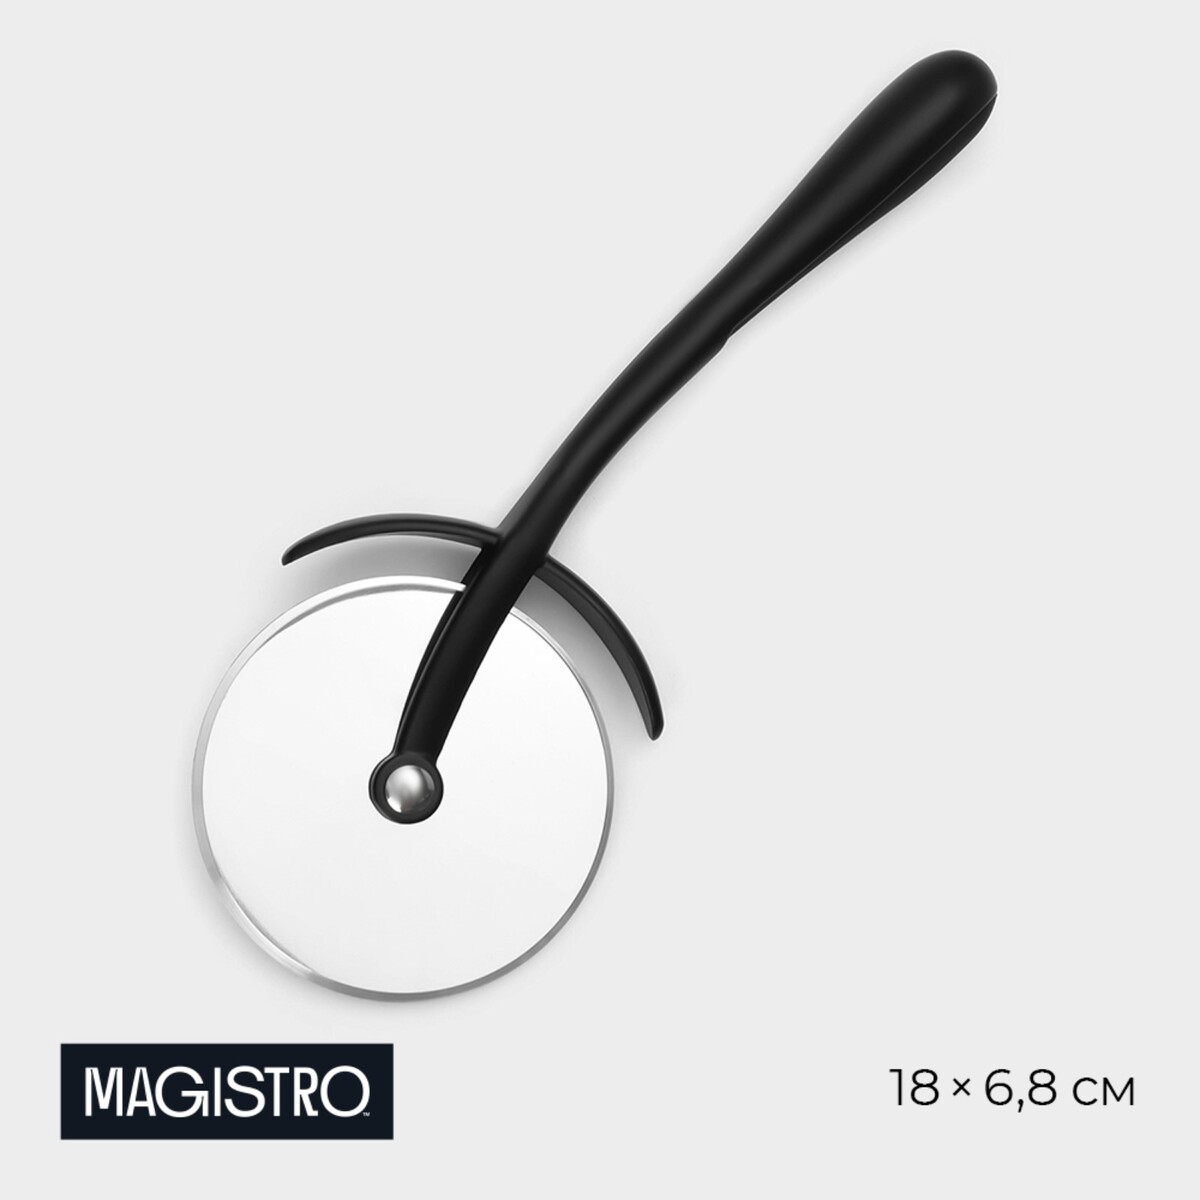 Нож для пиццы и теста magistro vantablack, 18×6,8 см, цвет черный